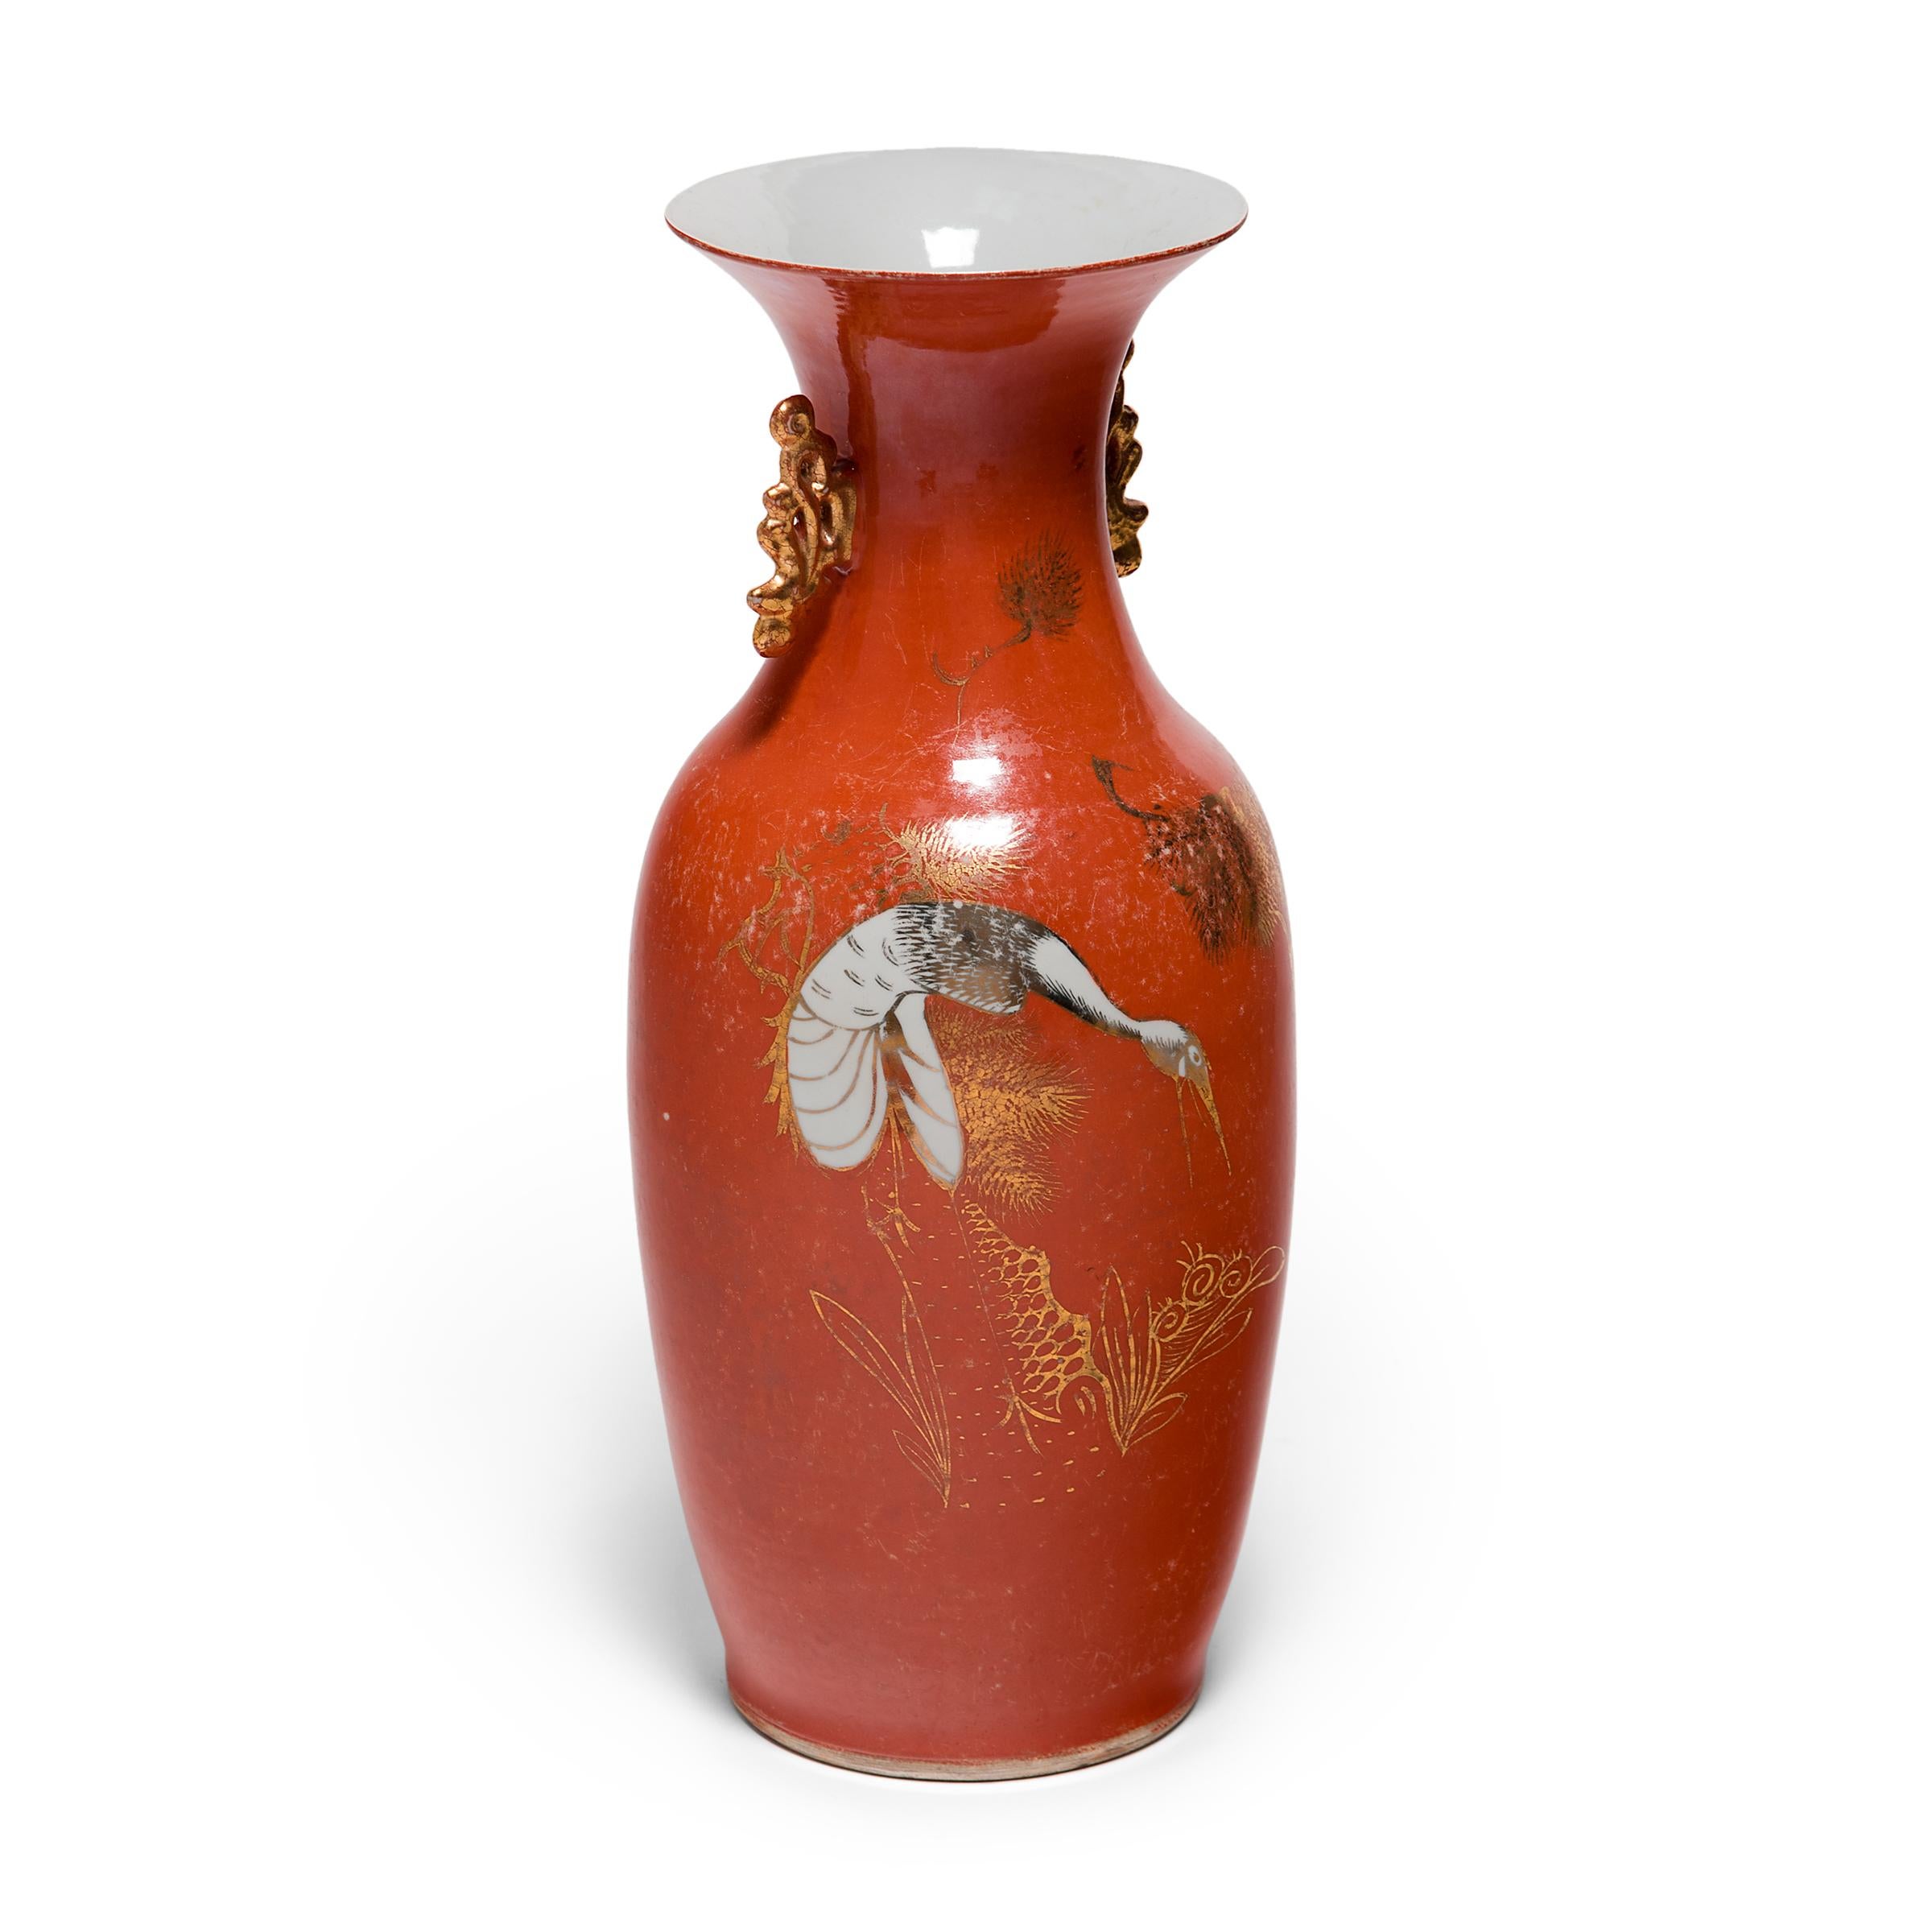 Diese Porzellanvase aus den 1920er Jahren, die sich an die dauerhafte Form des Phönixschwanzes aus der chinesischen Bronzezeit anlehnt, zeigt die geschwungenen Linien und die vergoldete Raffinesse, die den Art-déco-Stil des frühen 20. Jahrhunderts